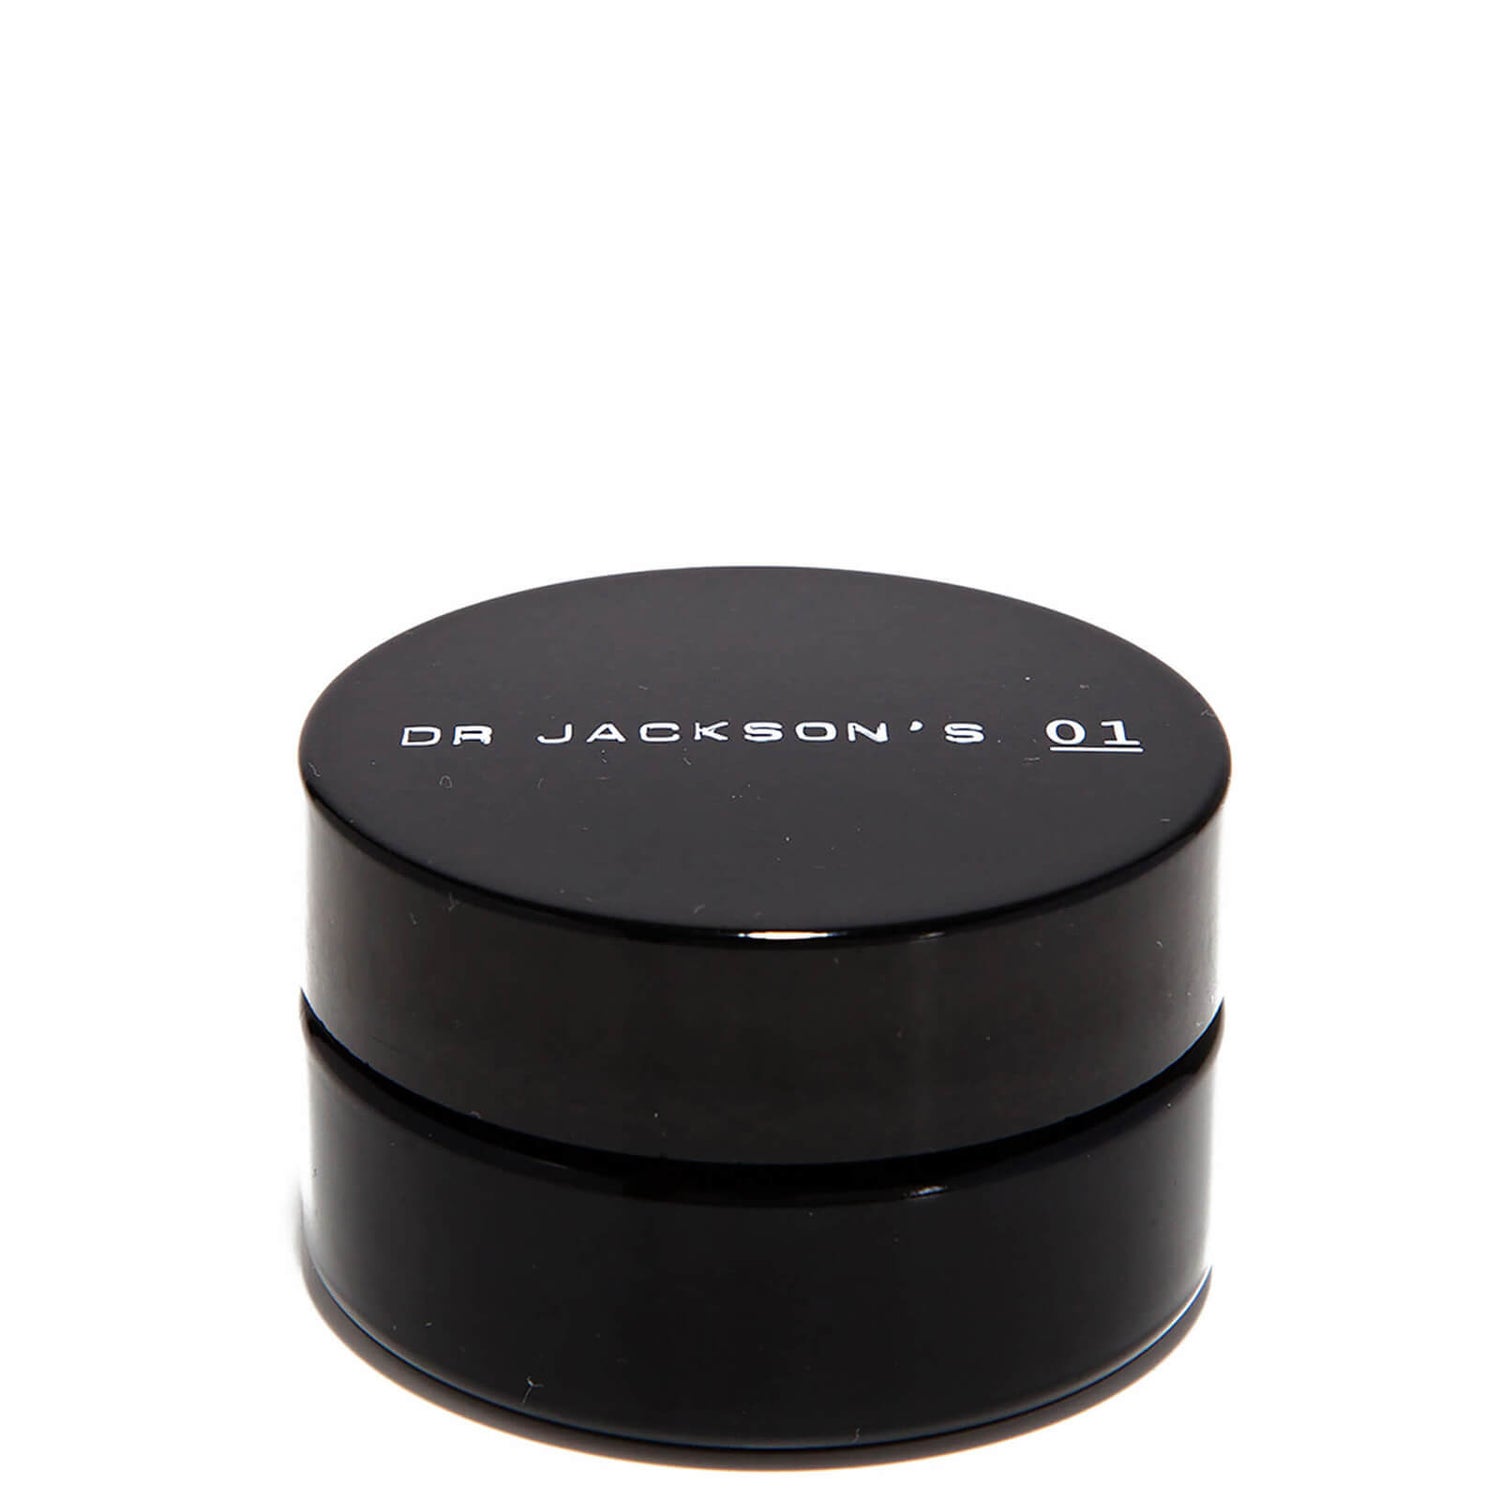 Crème pour la peau Dr. Jackson's Natural Products 01 30ml.